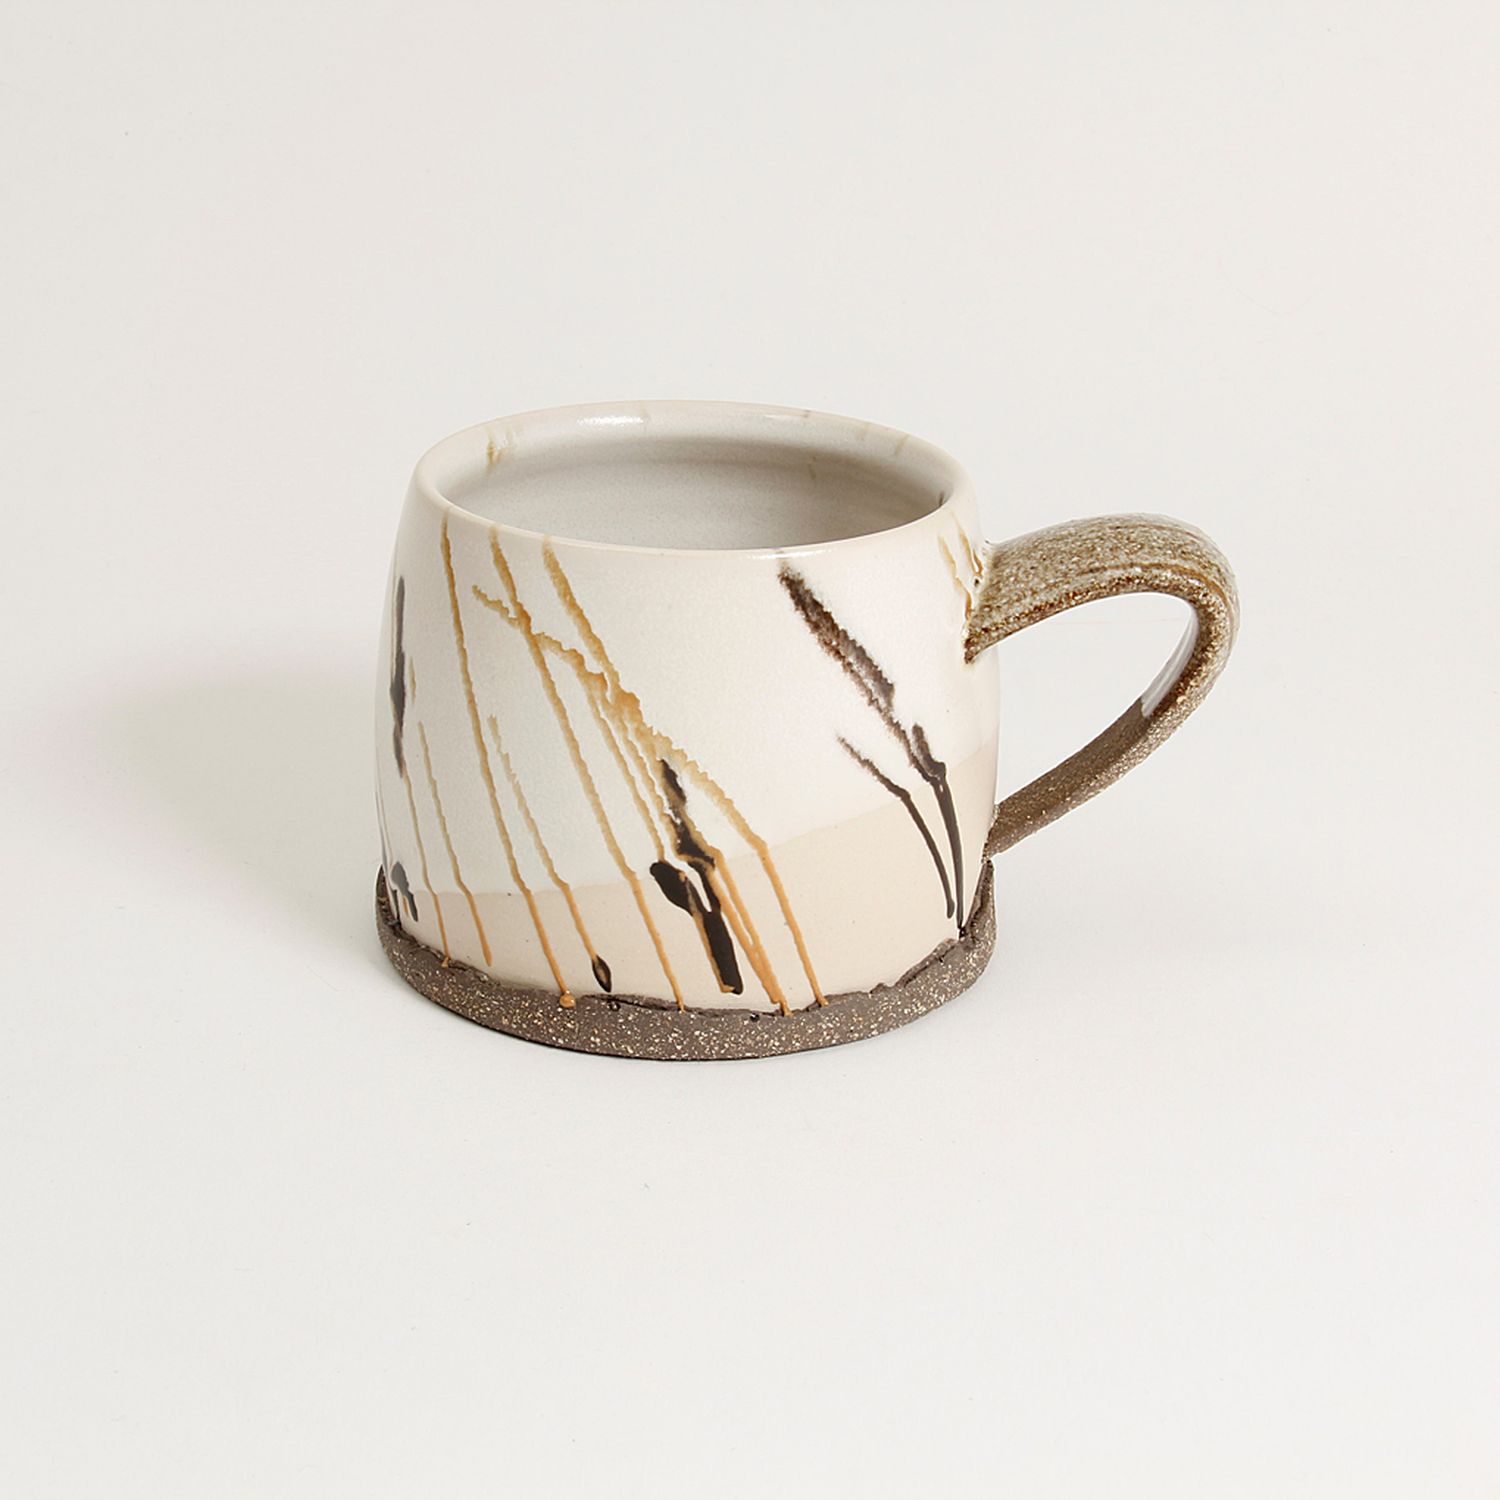 Gracia Isabel Gomez: “Cafe con Leche” White Chocolate Mug Product Image 5 of 7